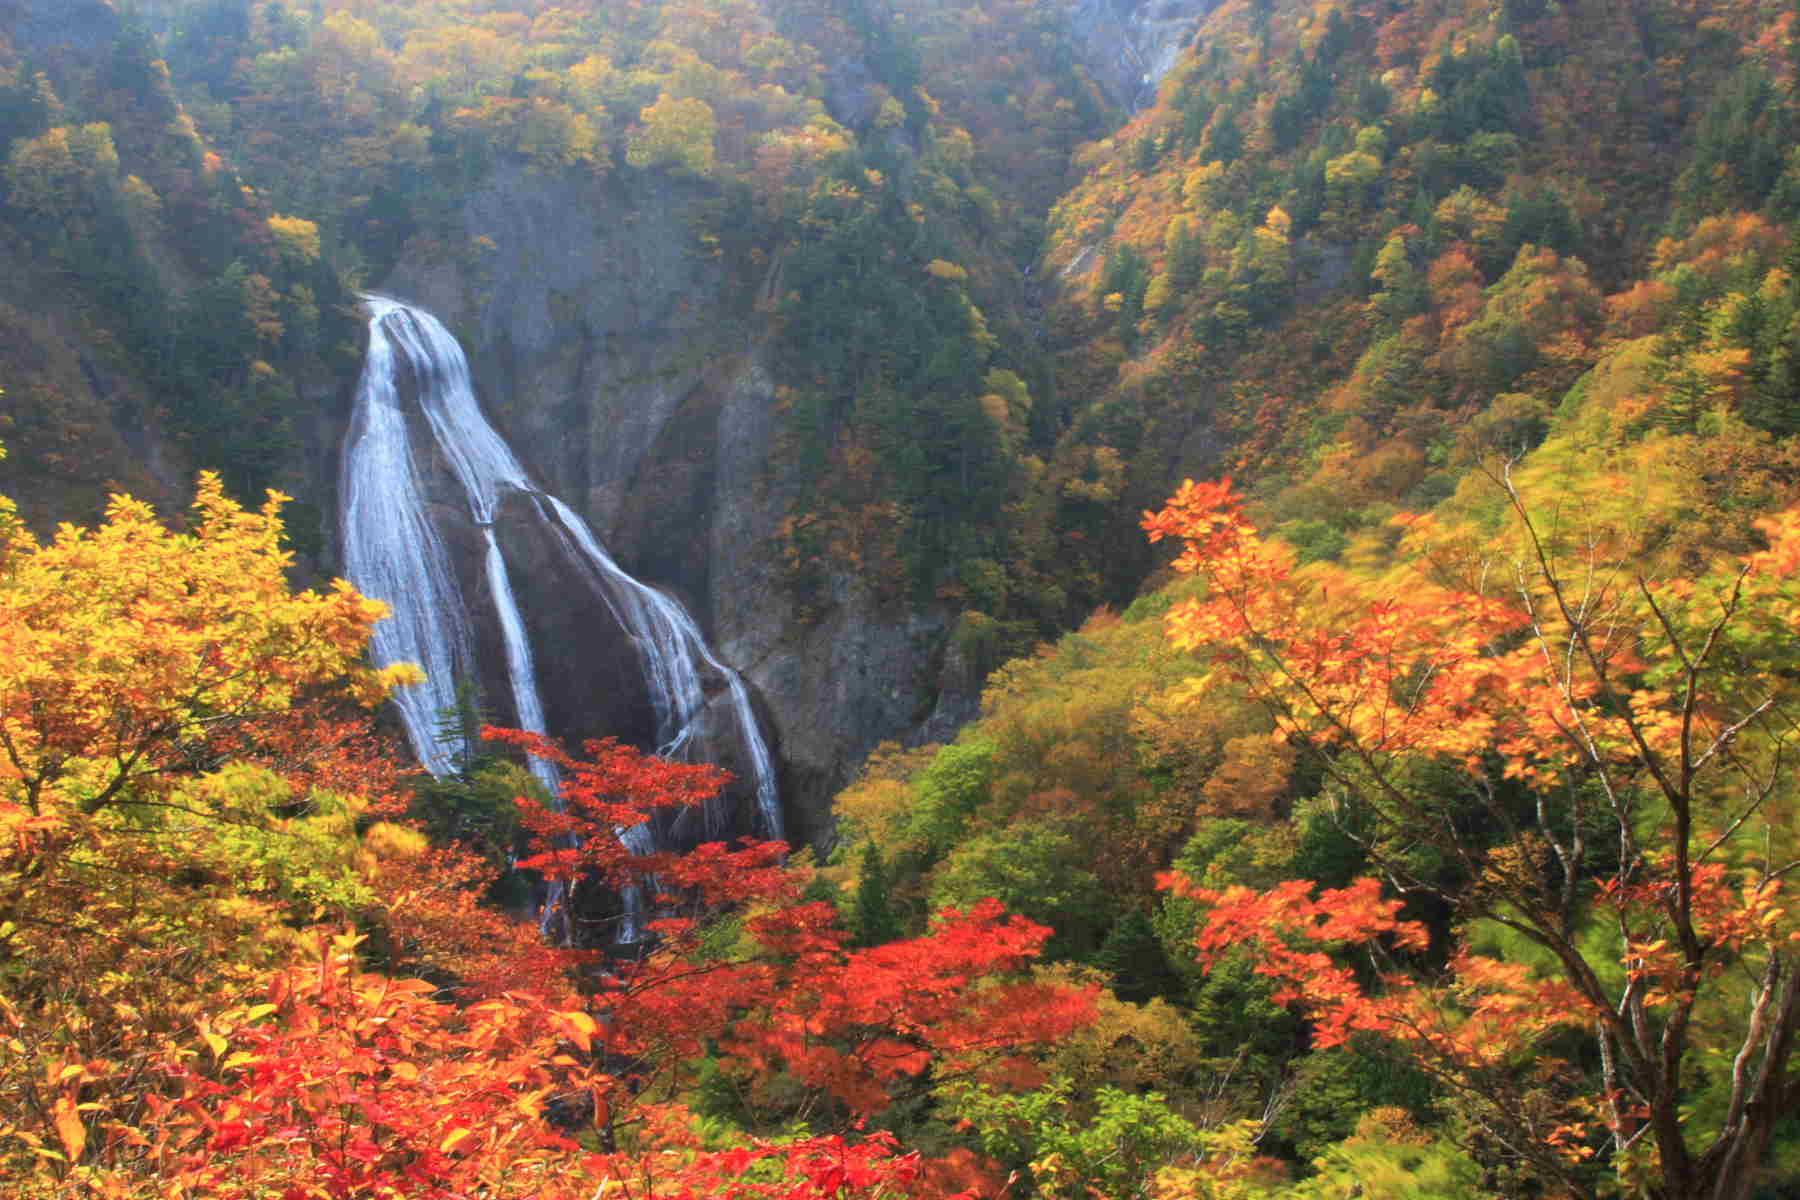 鴨志田昌也 日本の綺麗な風景画像ブログ